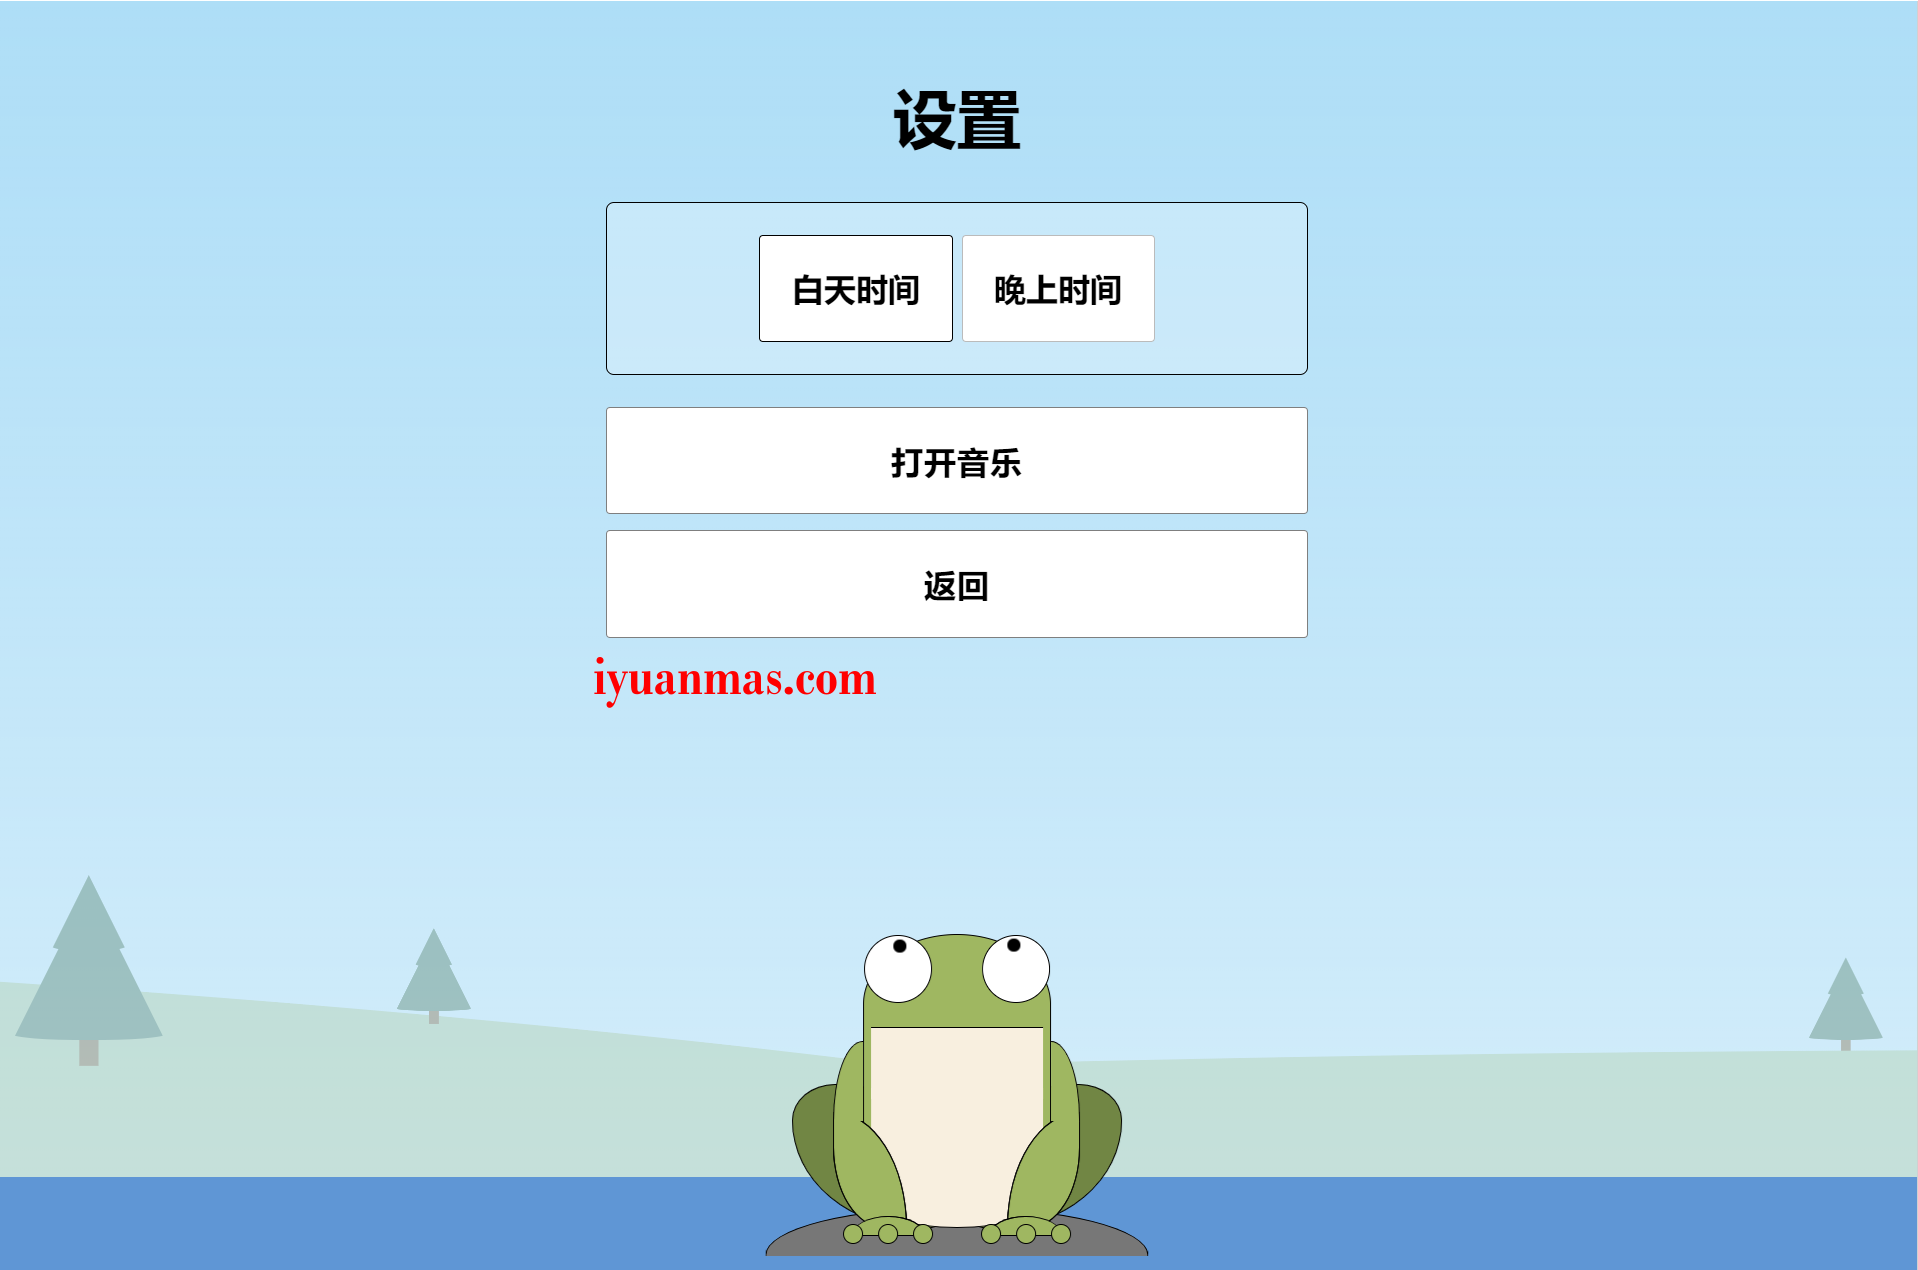 HTML5开发的青蛙吃蚊子小游戏程序代码分享 HTML源码模板 第2张